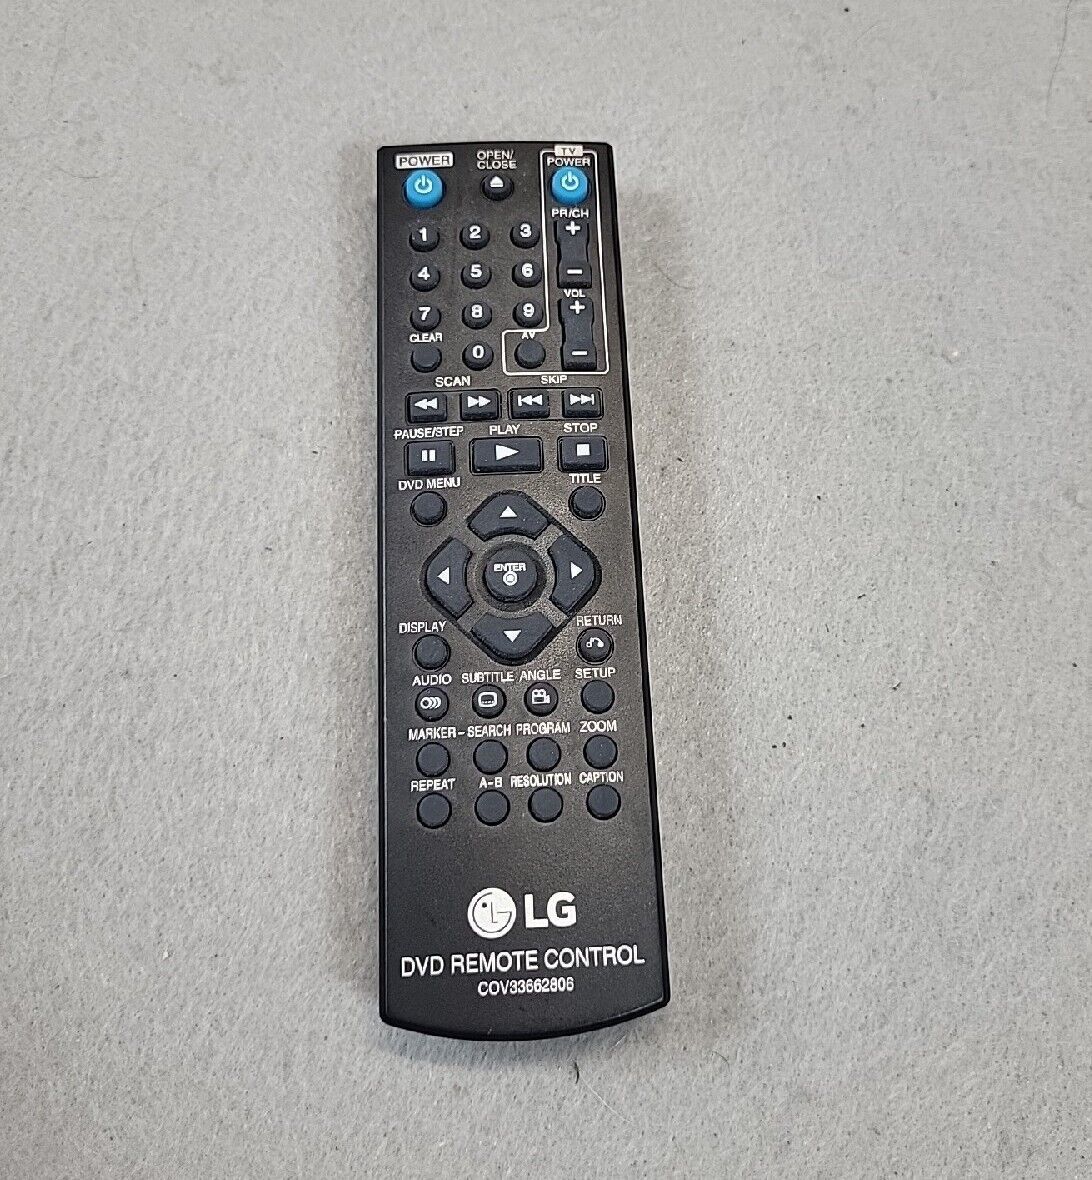 LG DVD Remote COV33662806 - $10.88